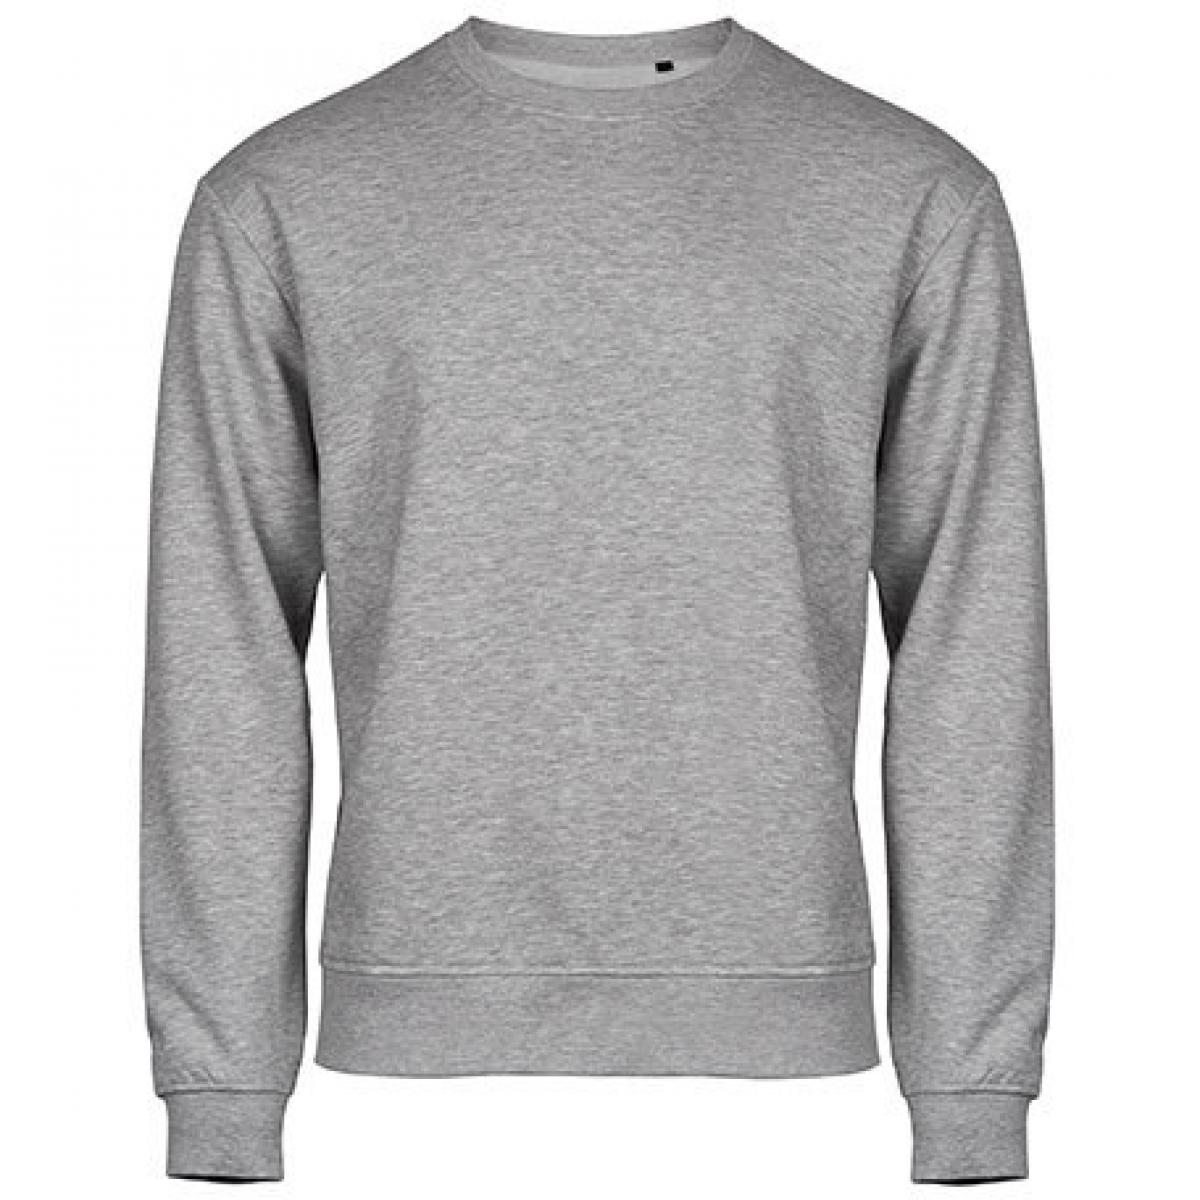 Hersteller: Tee Jays Herstellernummer: 5100 Artikelbezeichnung: Power Sweatshirt - Waschbar bis 60 °C Farbe: Heather Grey